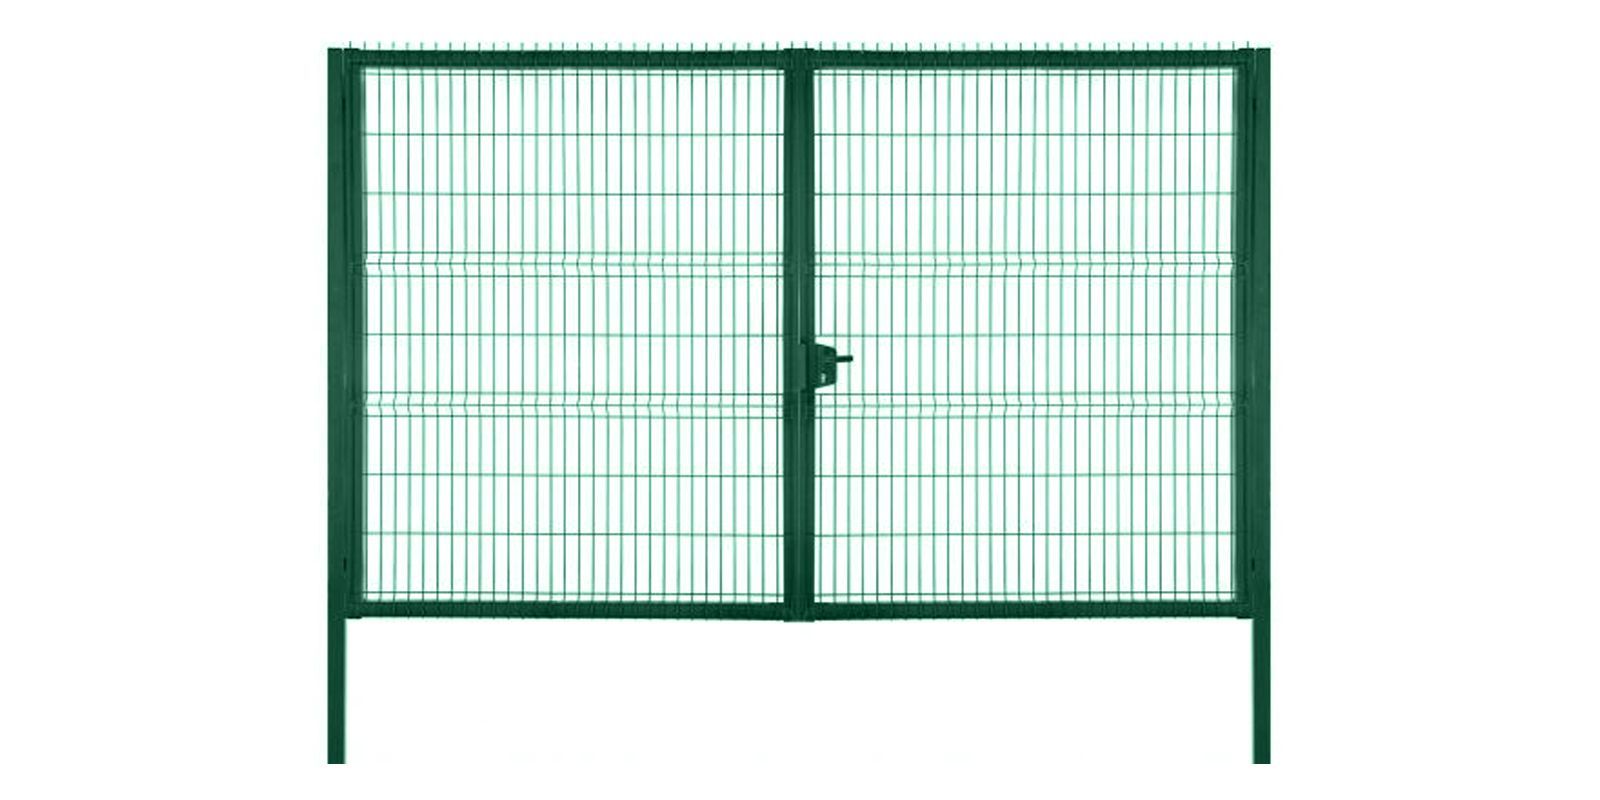 Купить Ворота для панельного ограждения Profi шириной 4,00 м с высотой сетки 2,43 м в цвете RAL 6005